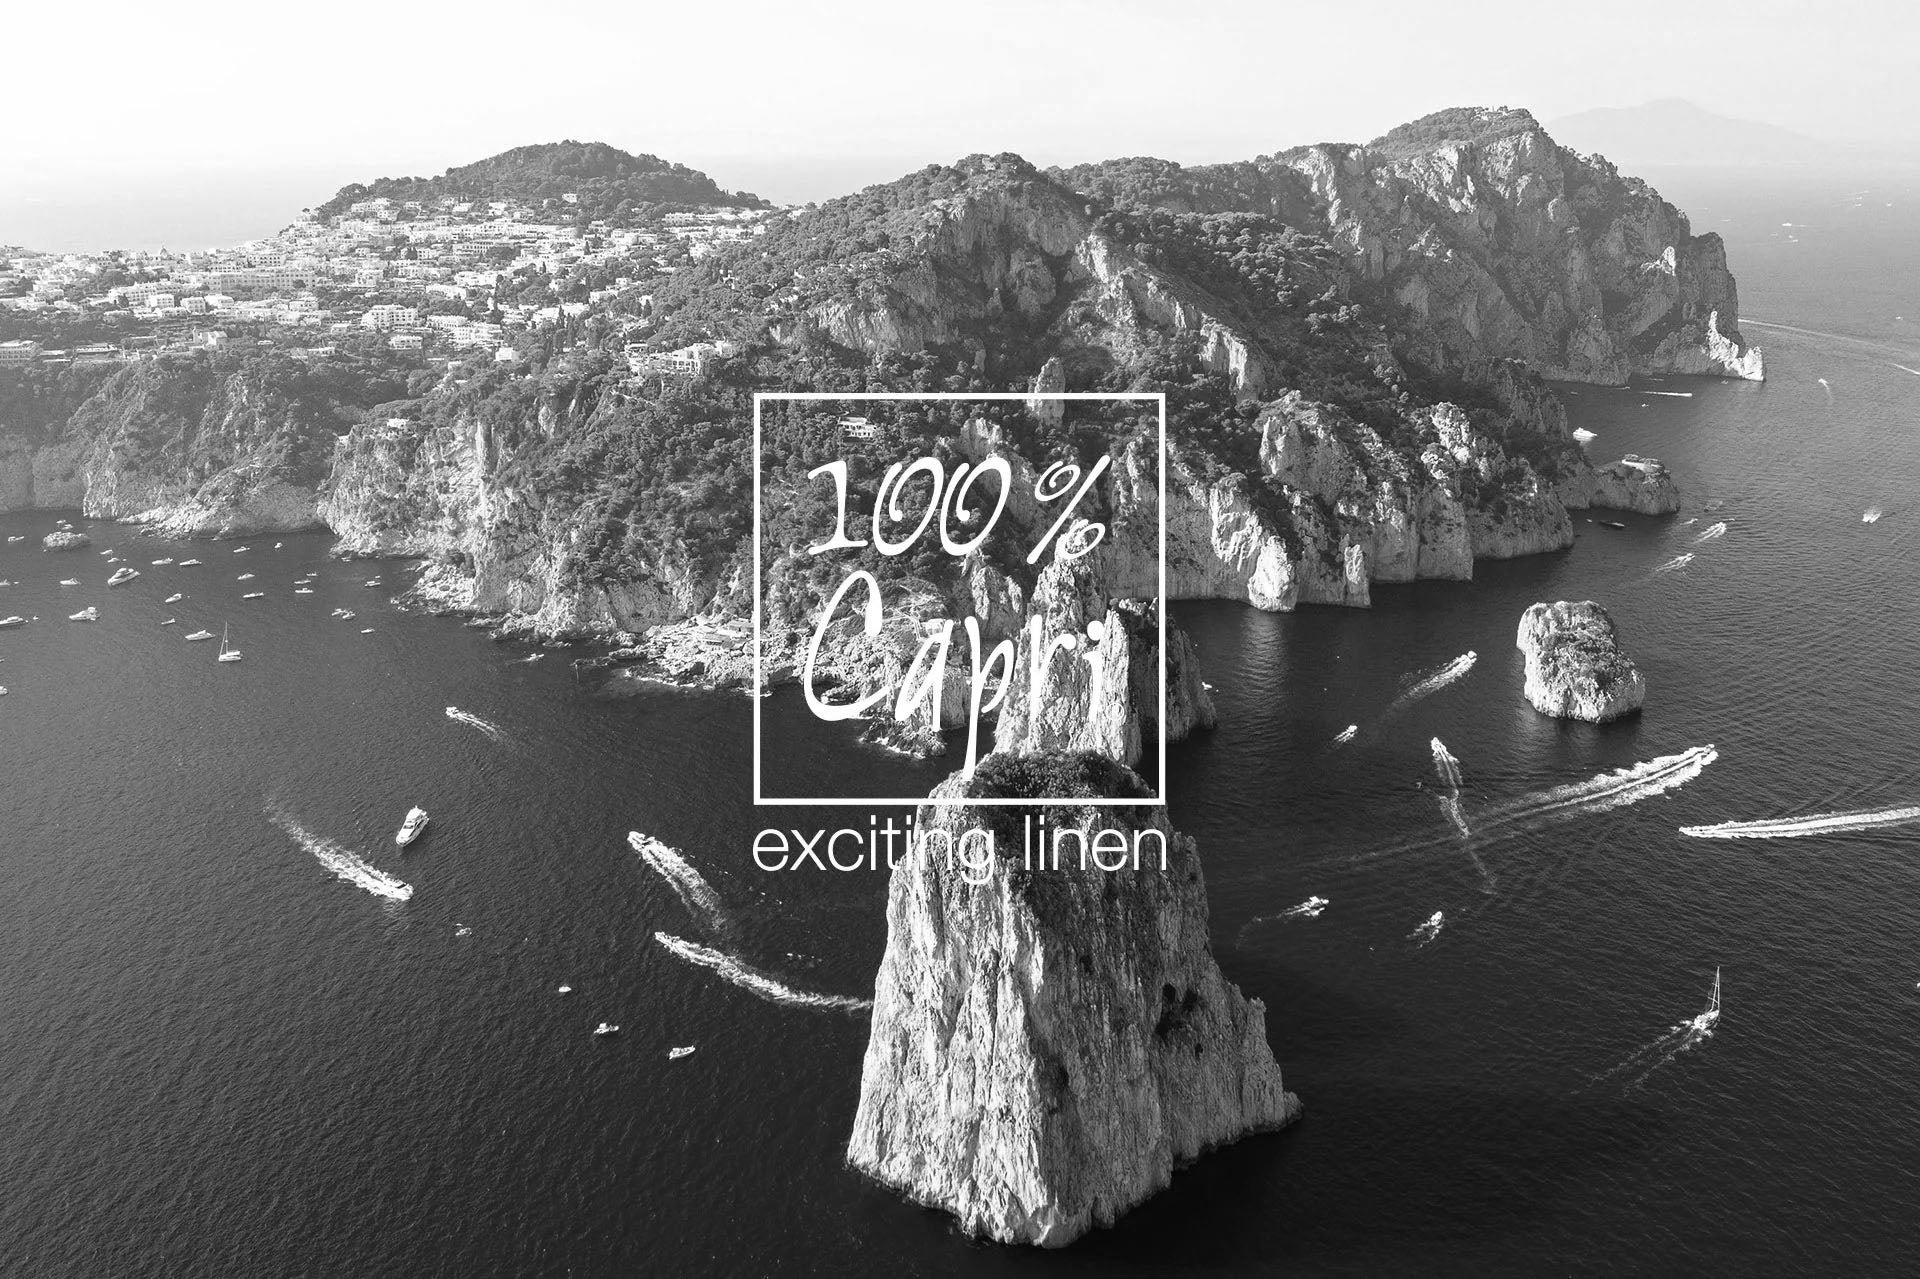 100% Capri